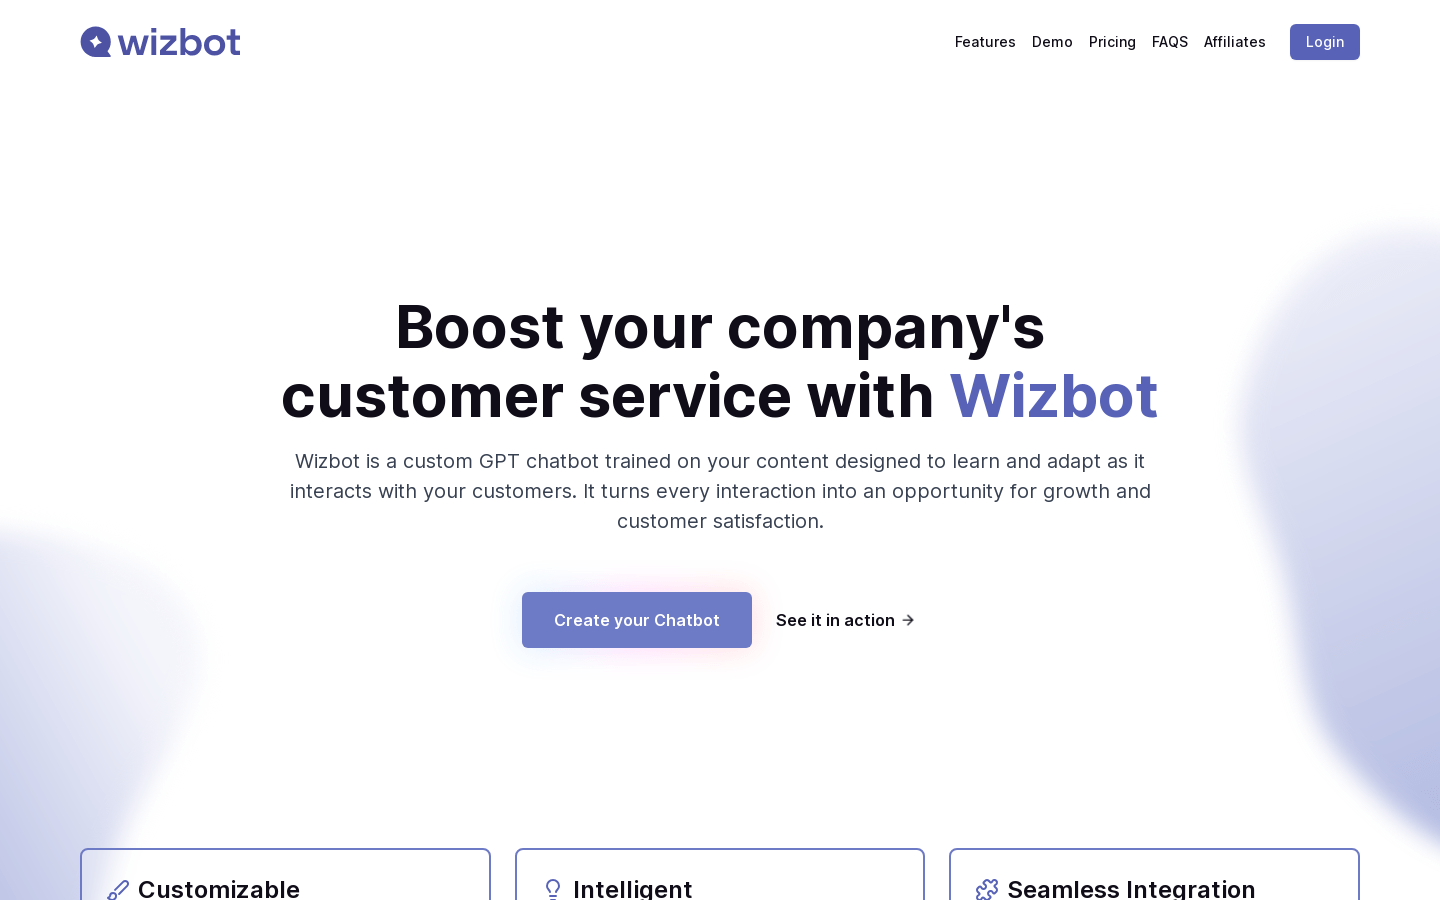 Wizbot